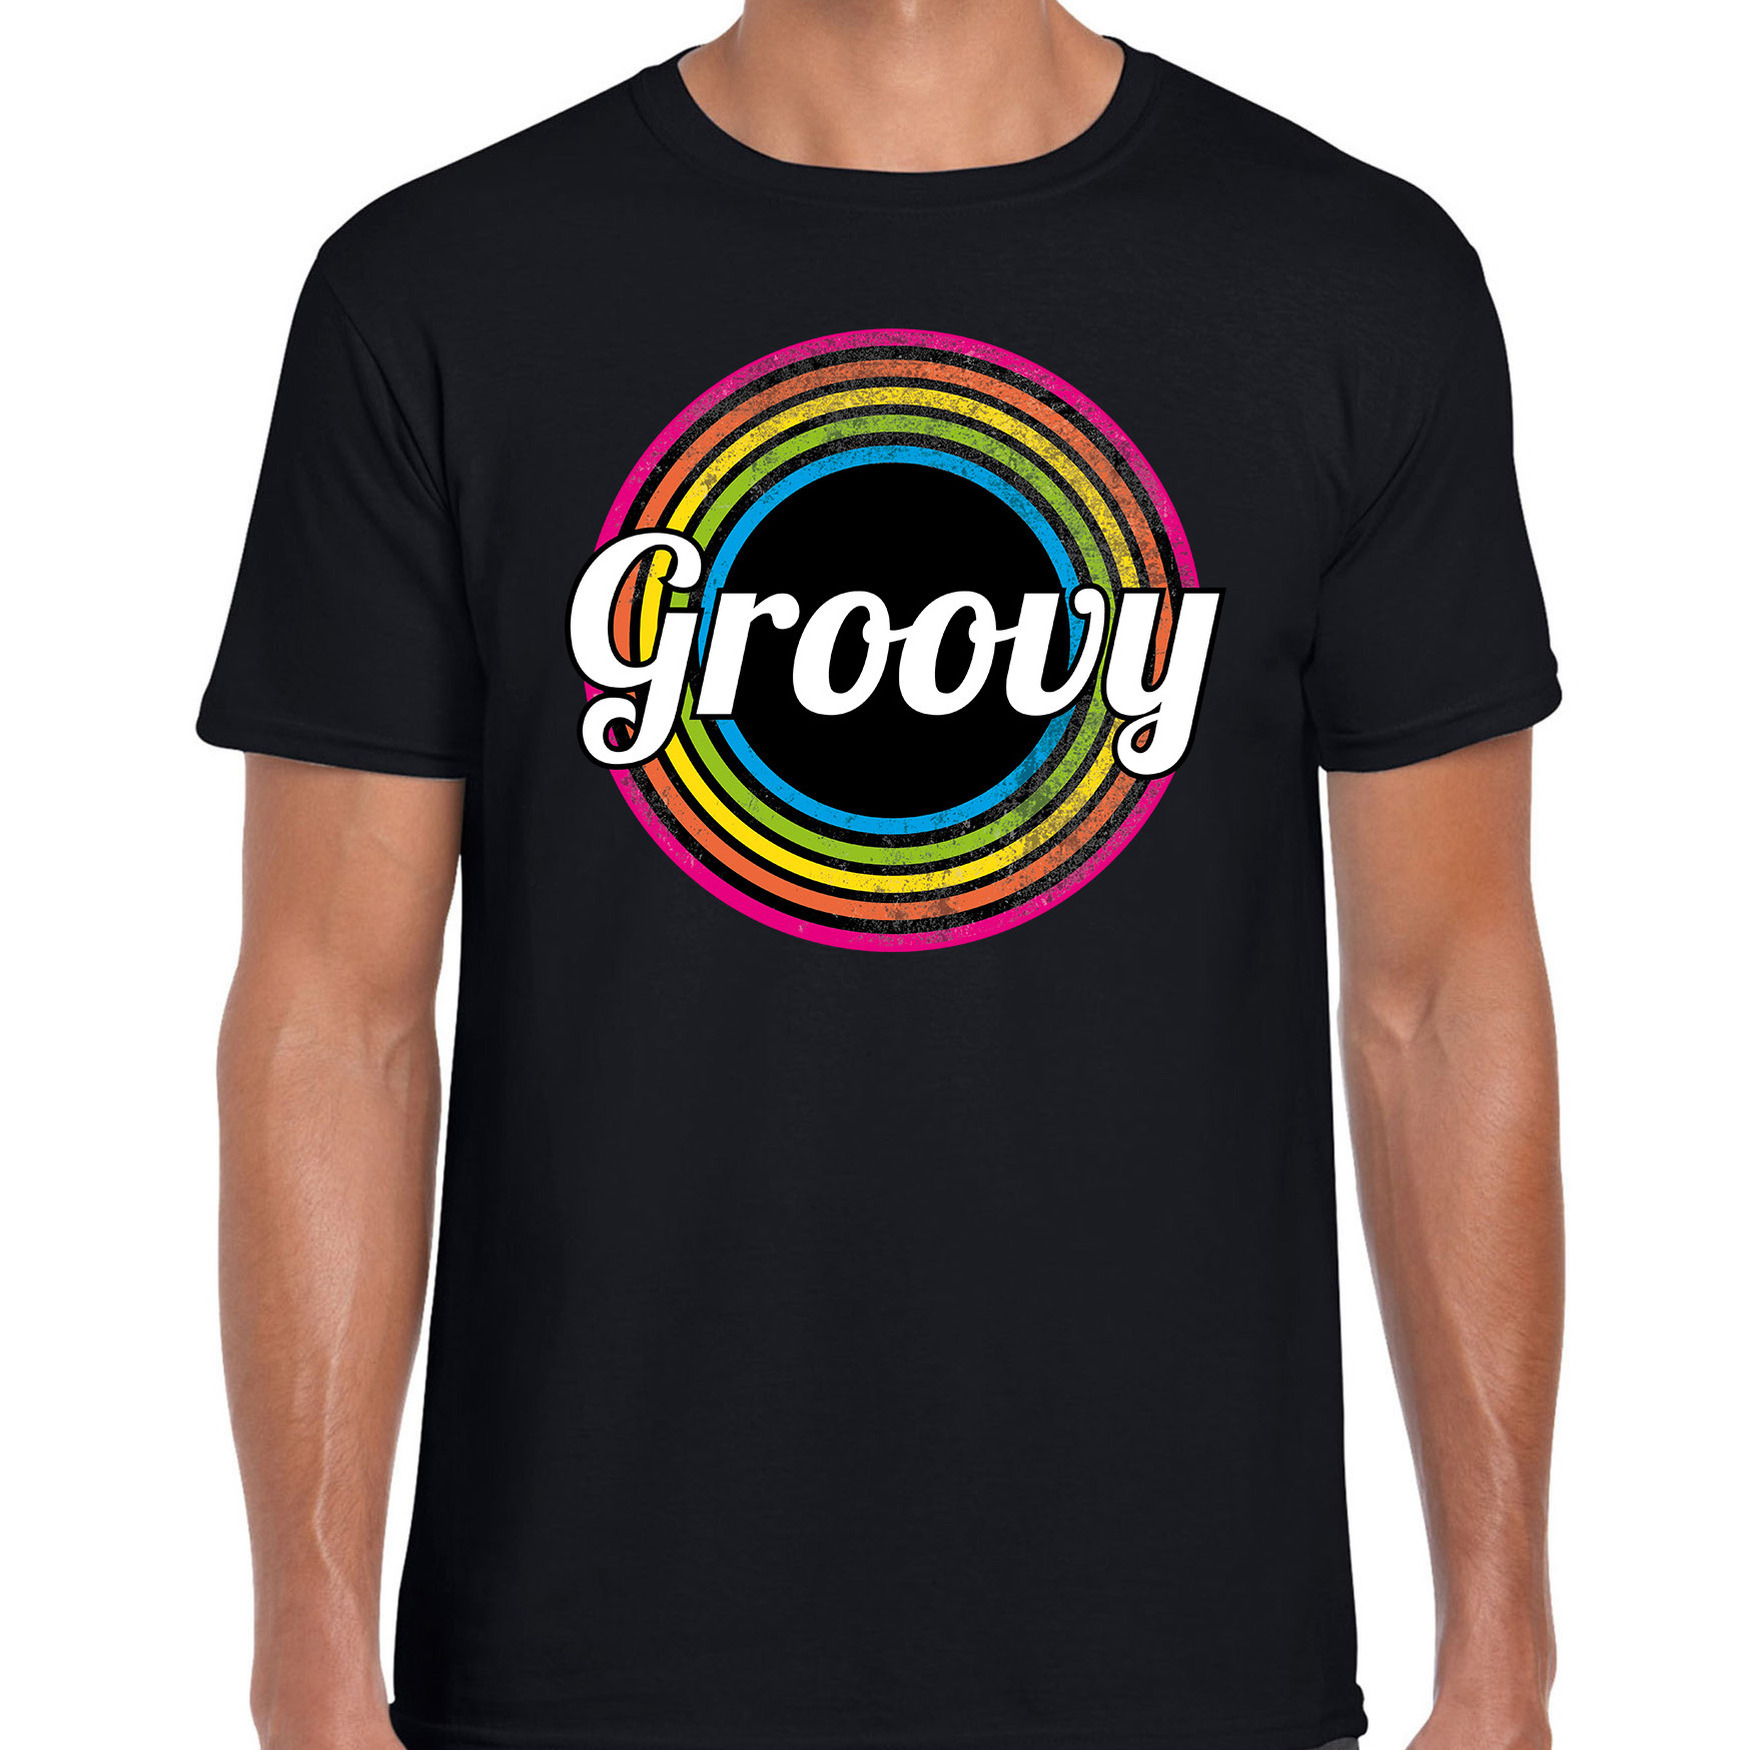 Groovy verkleed t-shirt zwart voor heren 70s, 80s party verkleed outfit